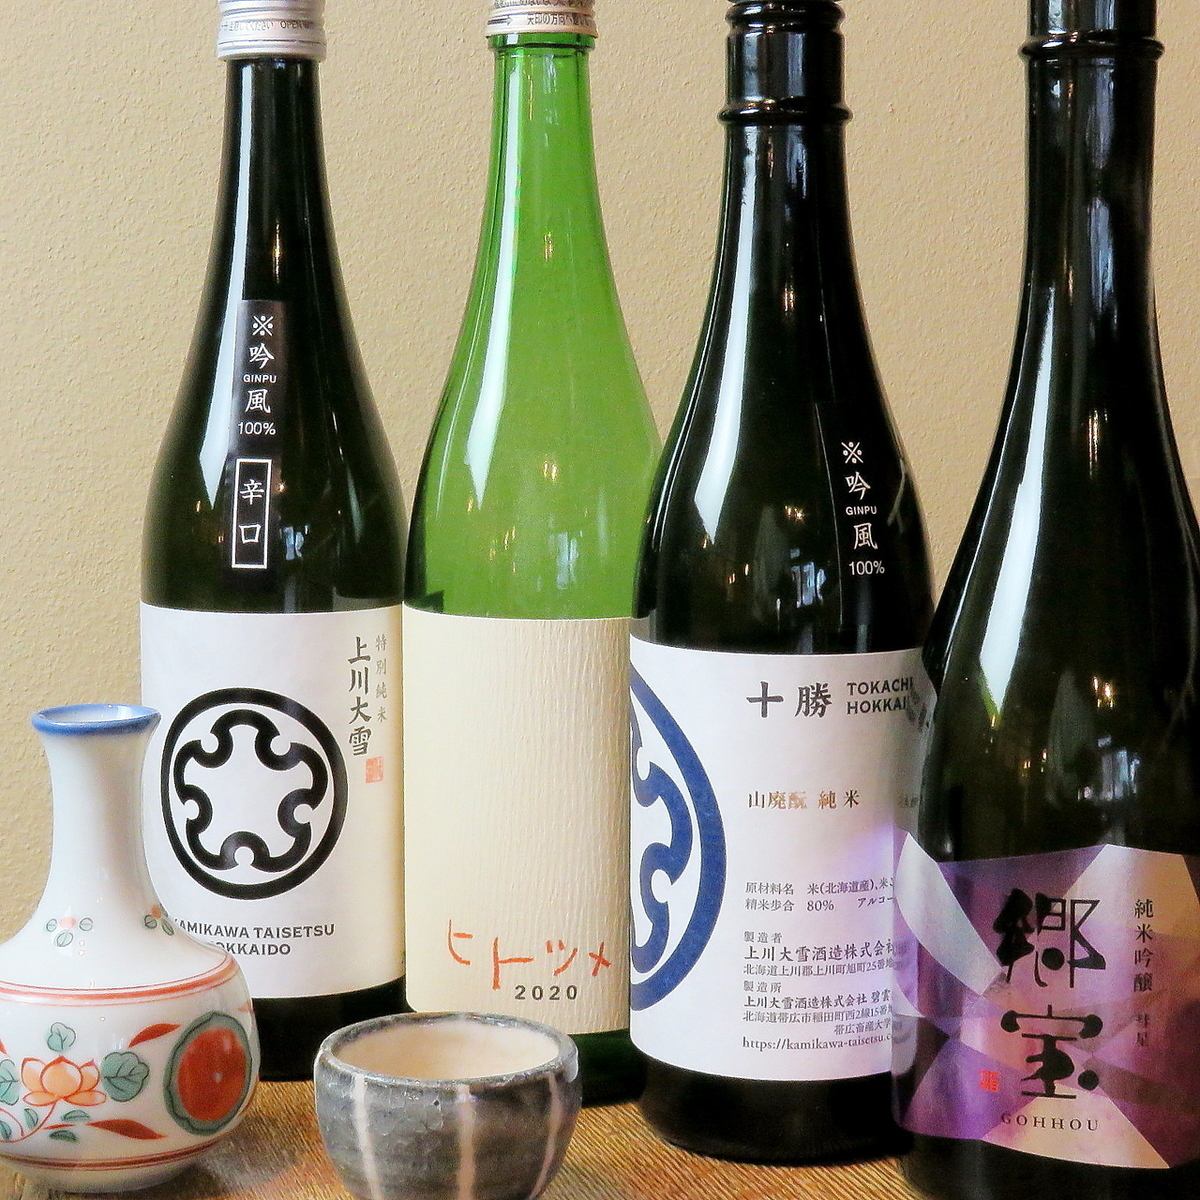 我們準備了從北海道清酒釀酒廠中精心挑選的業主推薦的當地清酒♪